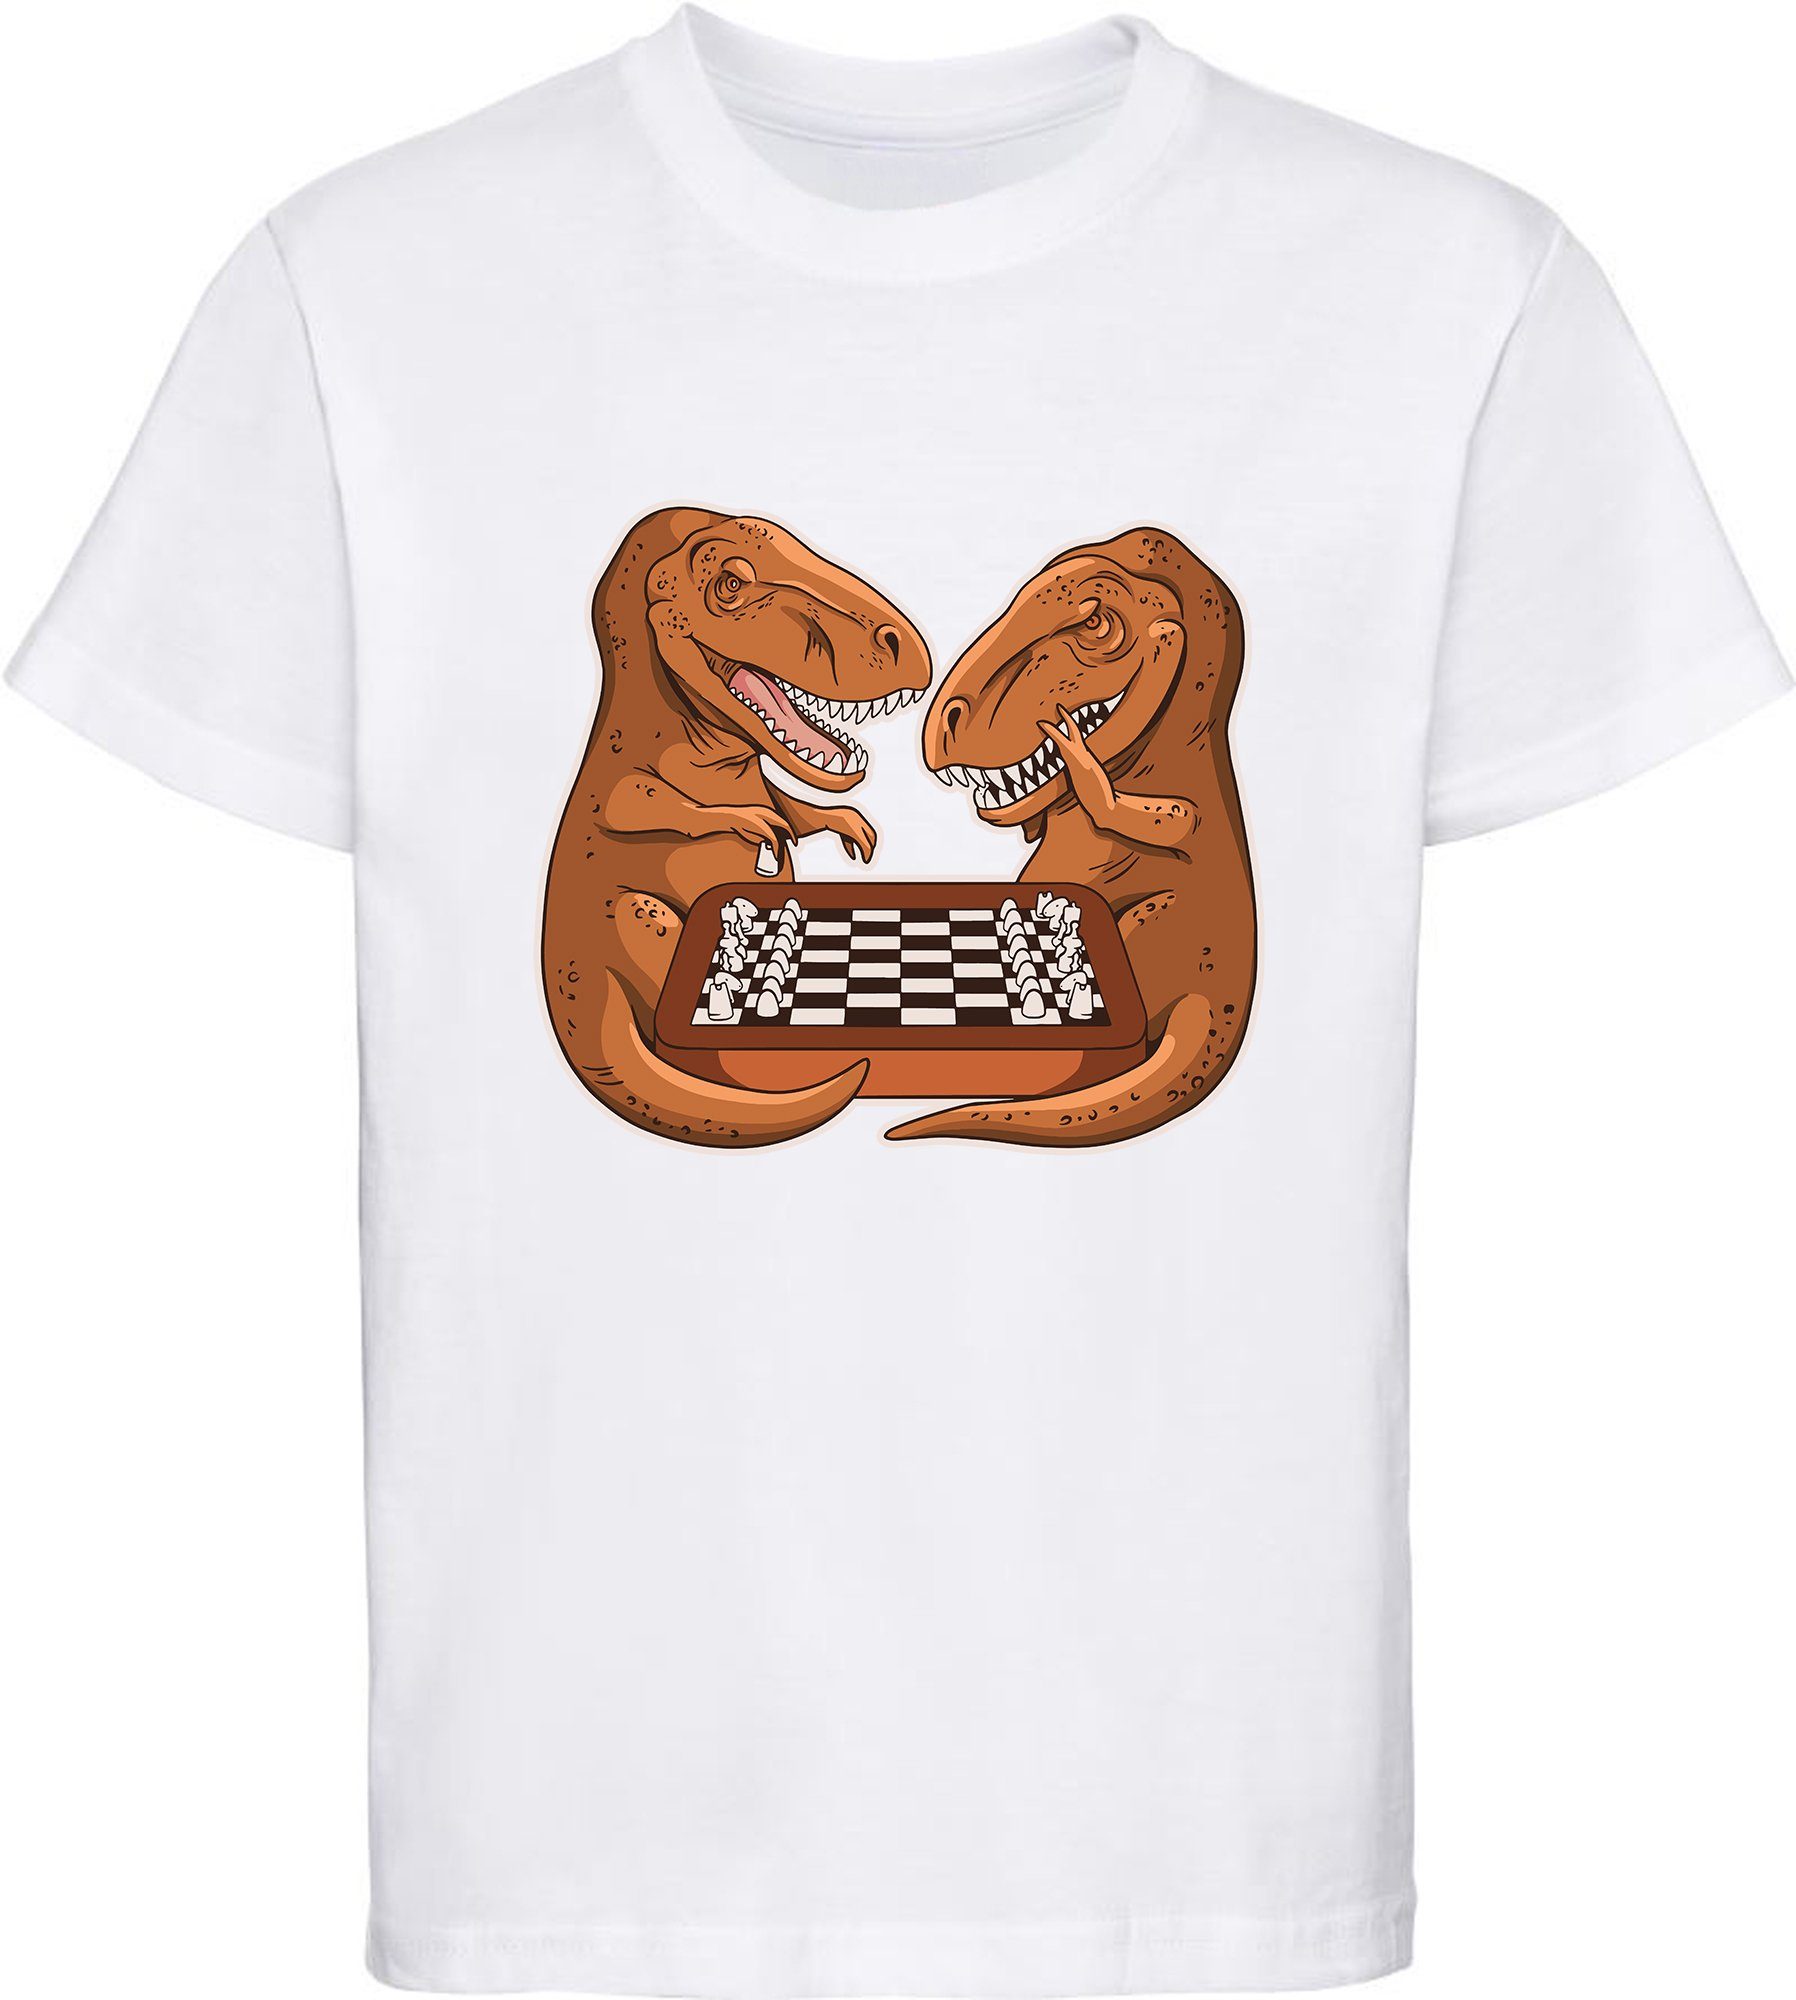 MyDesign24 Print-Shirt bedrucktes Kinder T-Shirt mit T-Rex beim Schach Baumwollshirt mit Dino, schwarz, weiß, rot, blau, i67 weiss